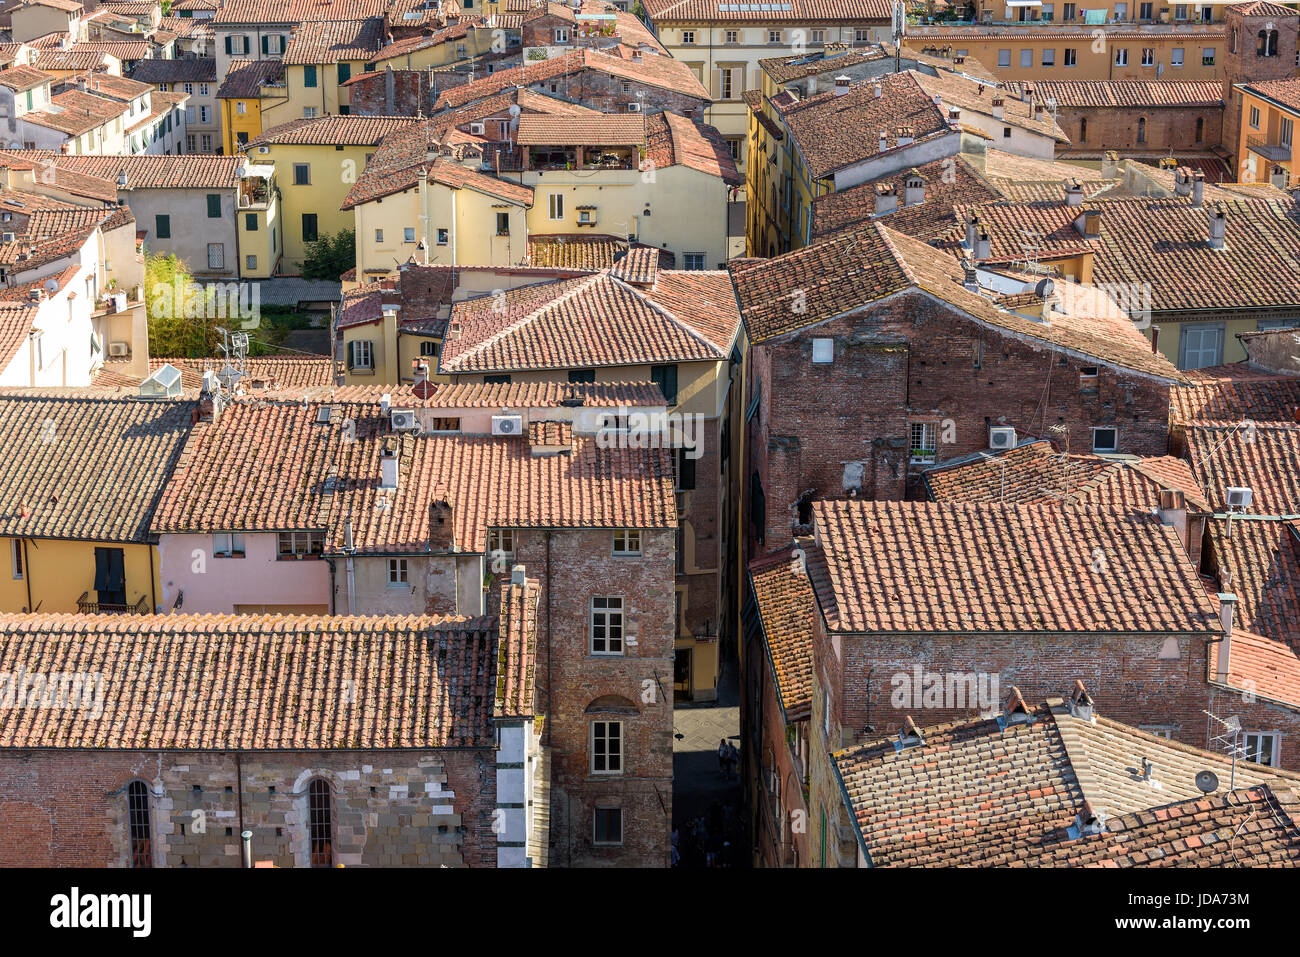 Luftbild von der mittelalterlichen Stadt Lucca, Toskana, Italien Stockfoto